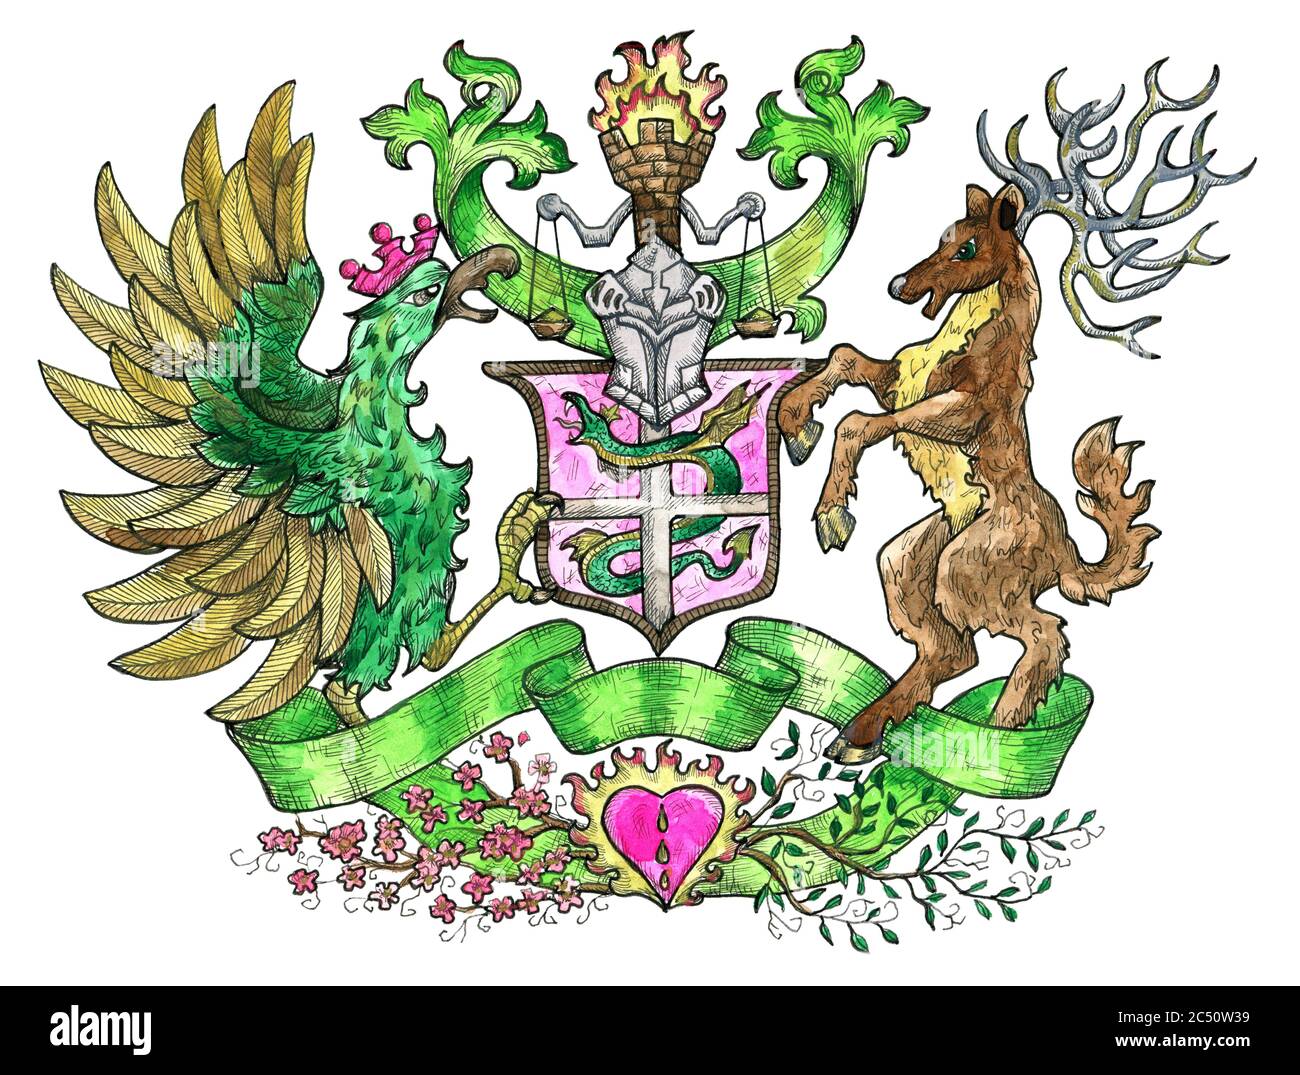 Emblème héraldique coloré avec oiseau de coq et cerf à cornes isolés sur du blanc. Illustration gravée colorée avec des créatures mythologiques et fantasques dans o Banque D'Images